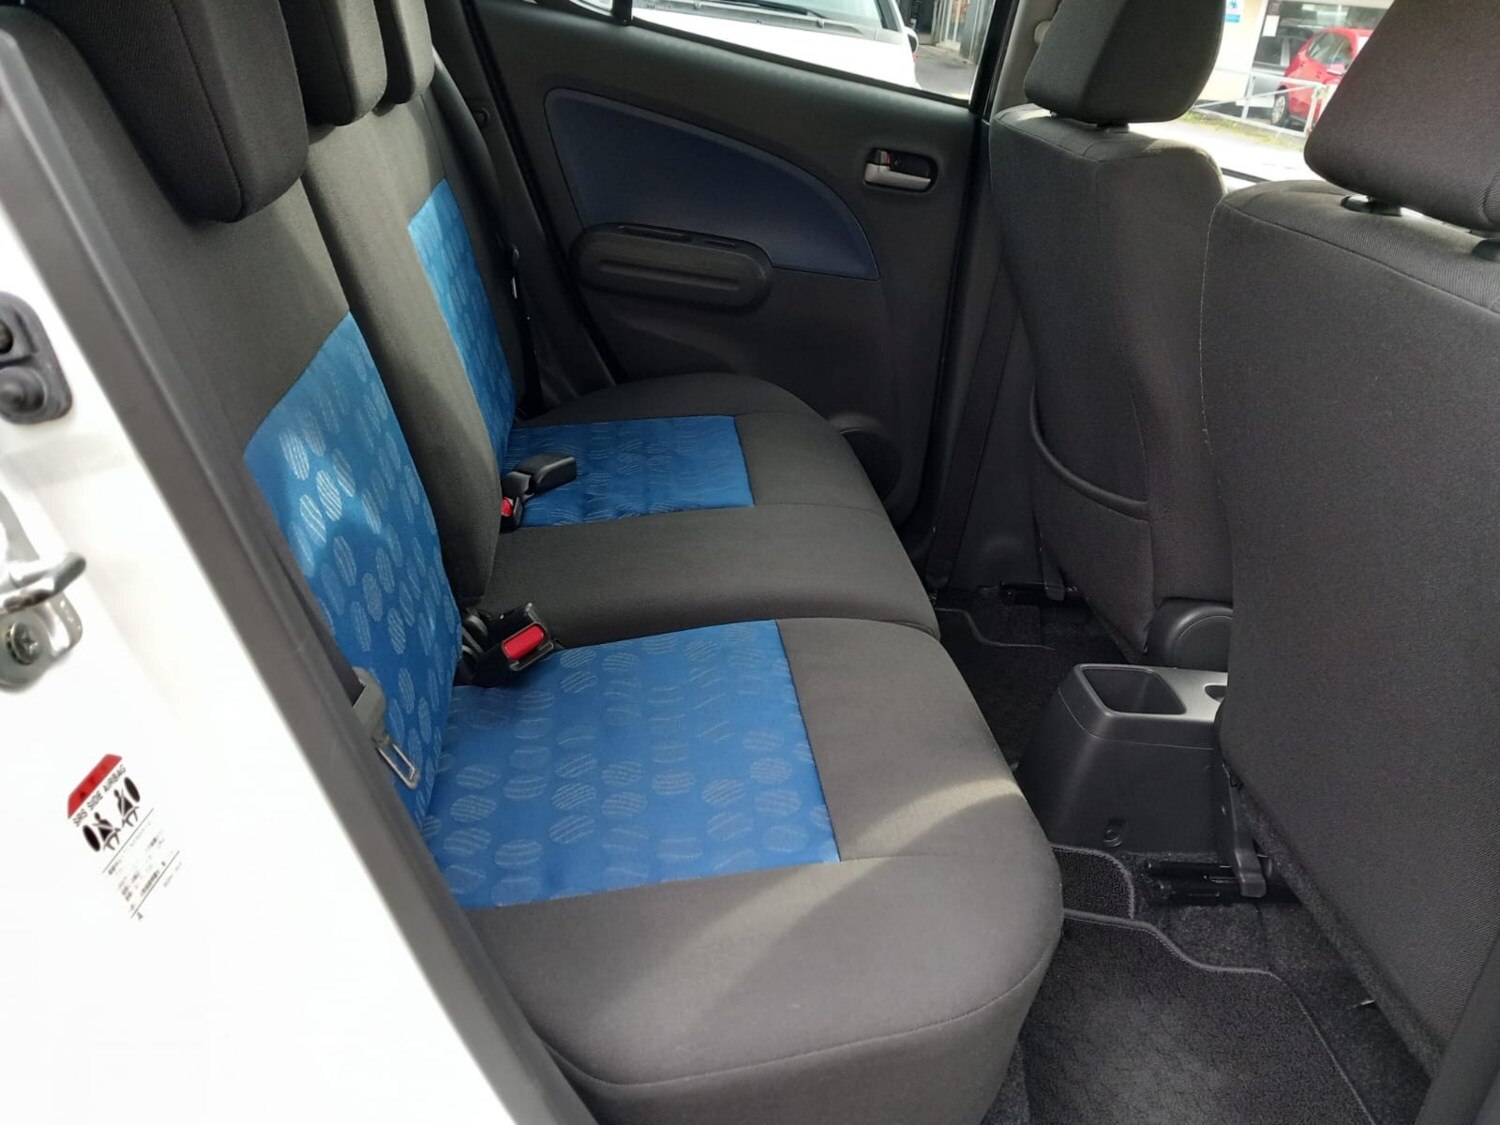 Coventry Square Auto Seat Covers - Suzuki Celerio 2010 in a custom